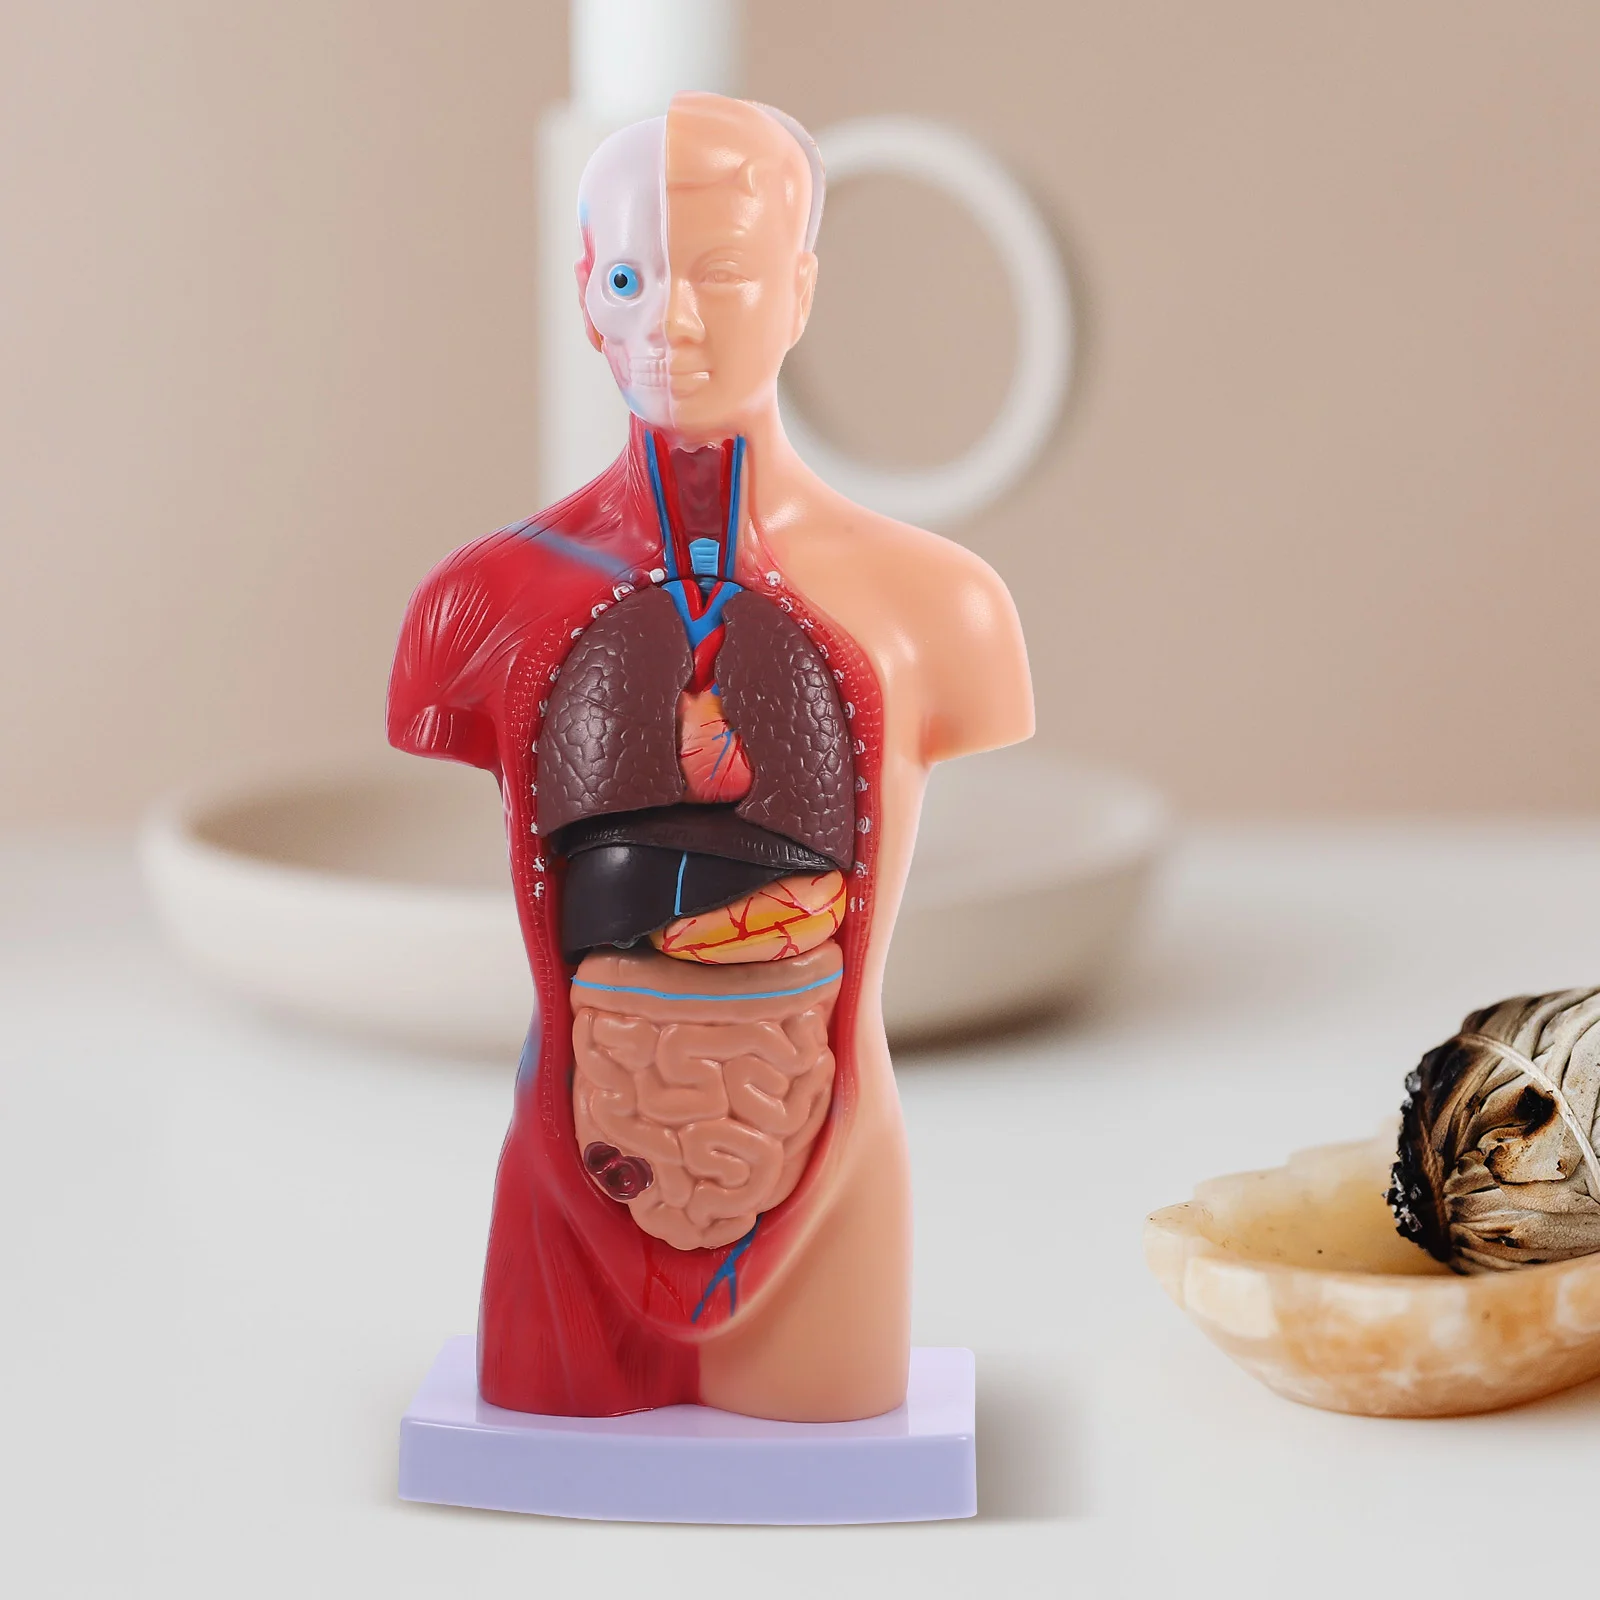 İnsan Torso Vücut Modeli Playset Öğretim Anatomi Organları Modeli Okul Eğitim aracı Çocuklar İnsan Vücudu Hemşirelik Torso Anatomik Görüntü 4